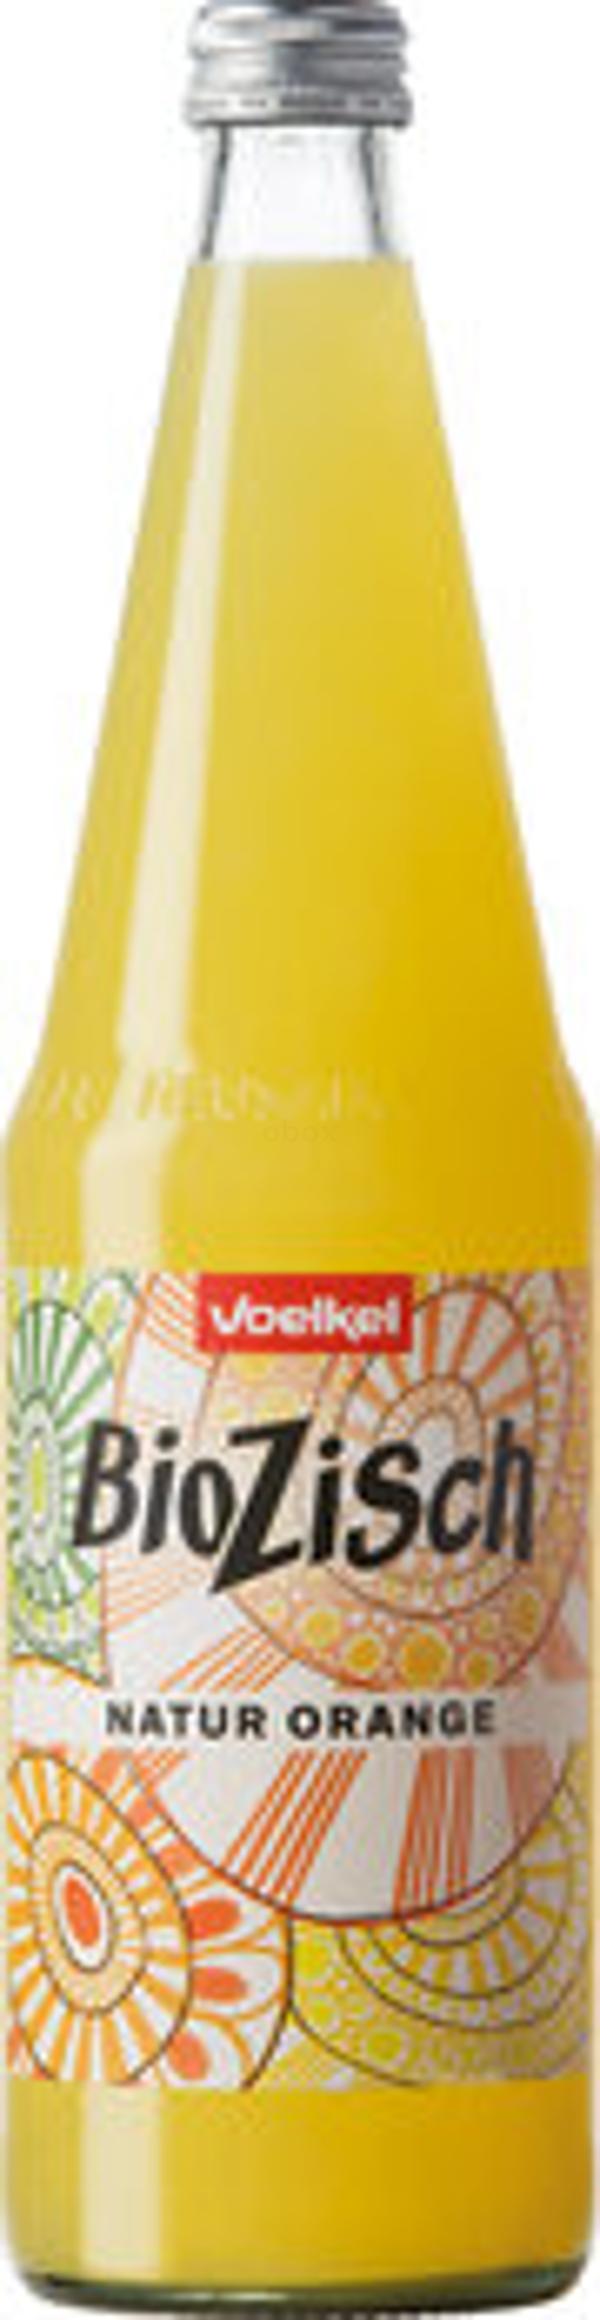 Produktfoto zu BioZisch Natur Orange 0,7L